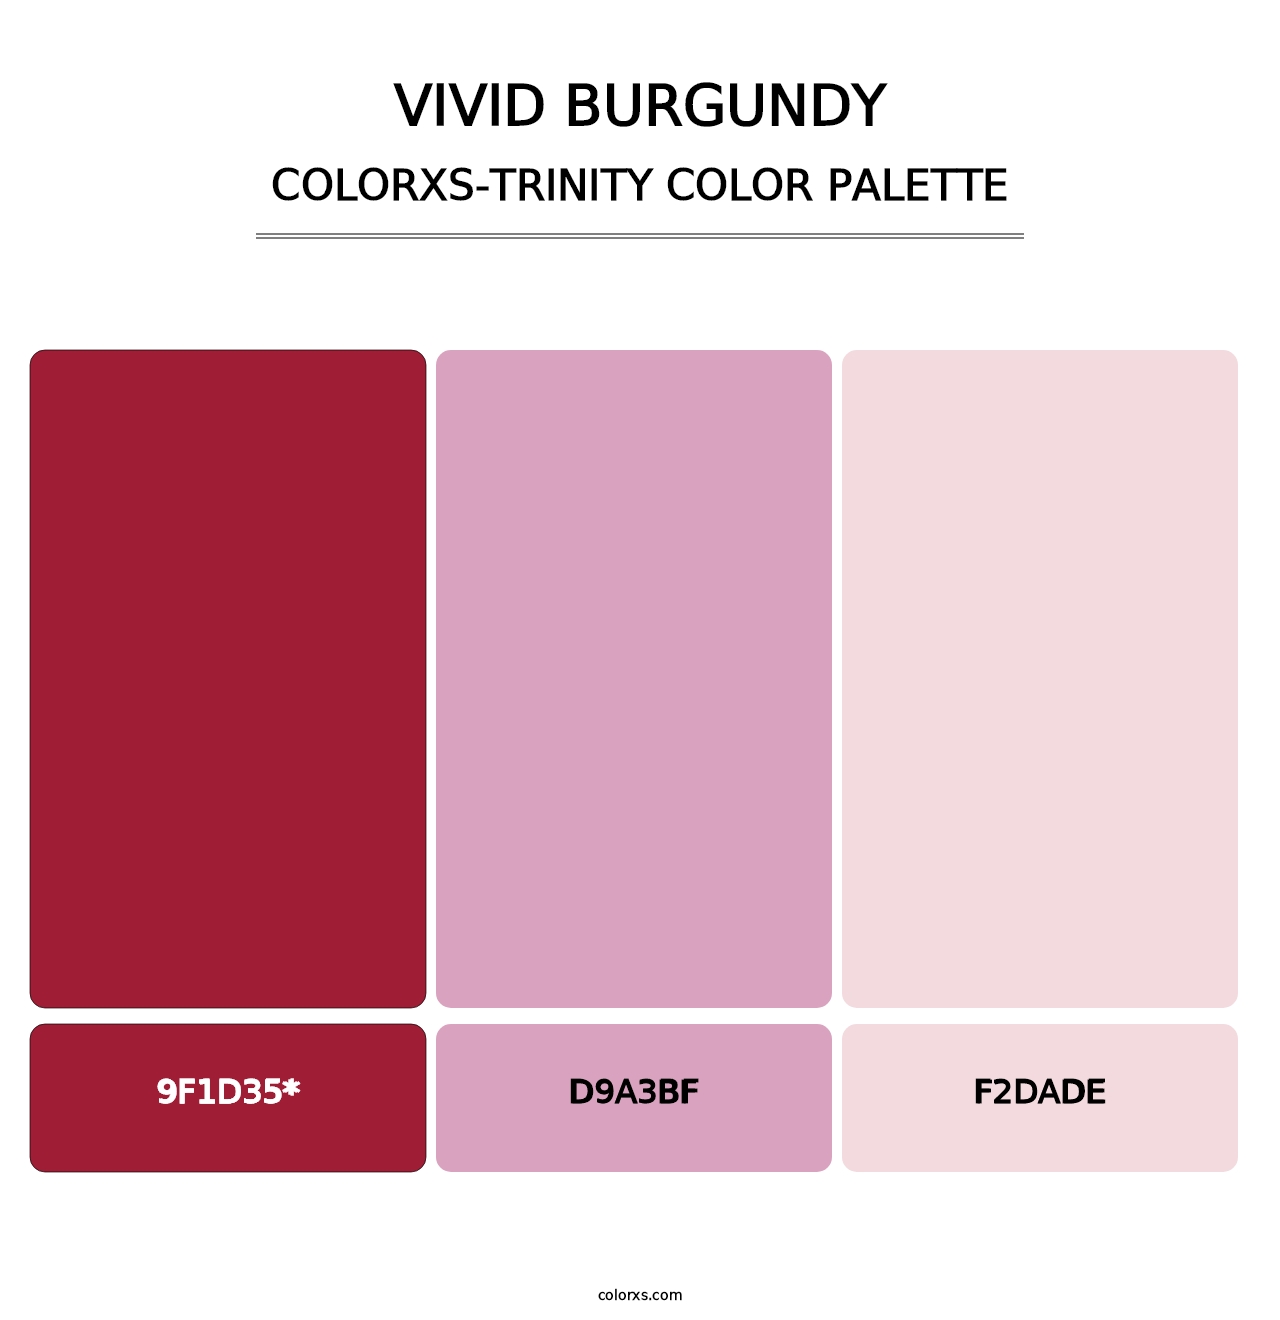 Vivid Burgundy - Colorxs Trinity Palette